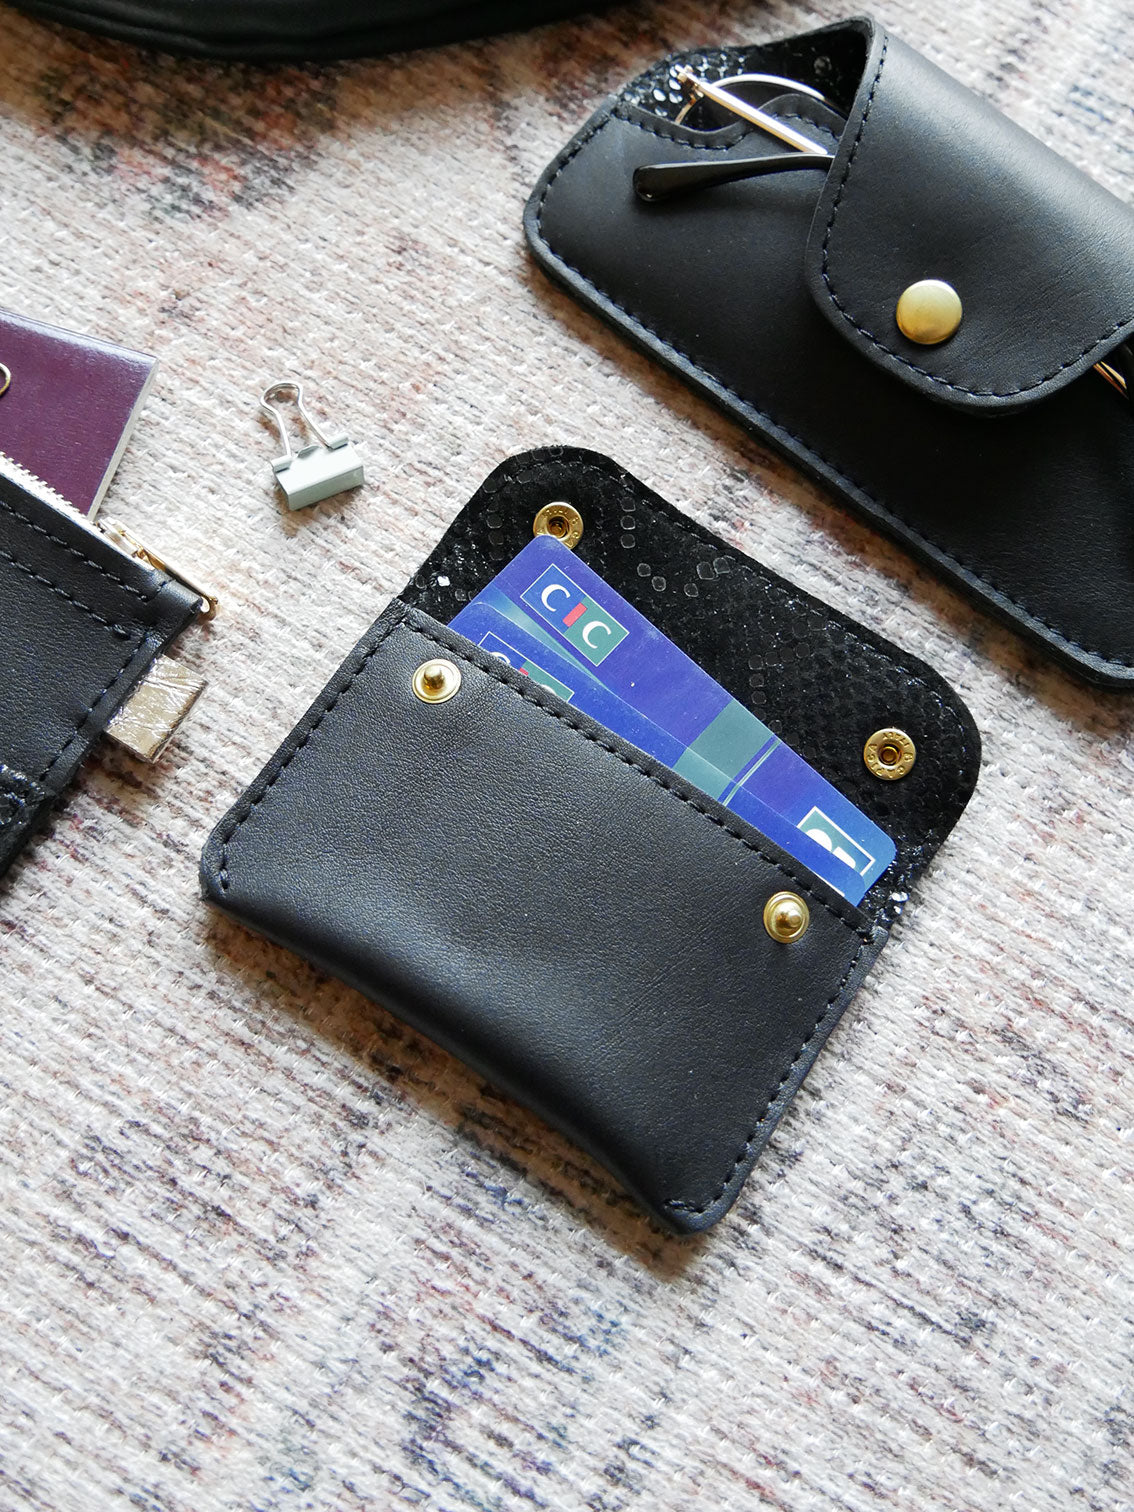 Porte-cartes PC25 en cuir noir et brillant